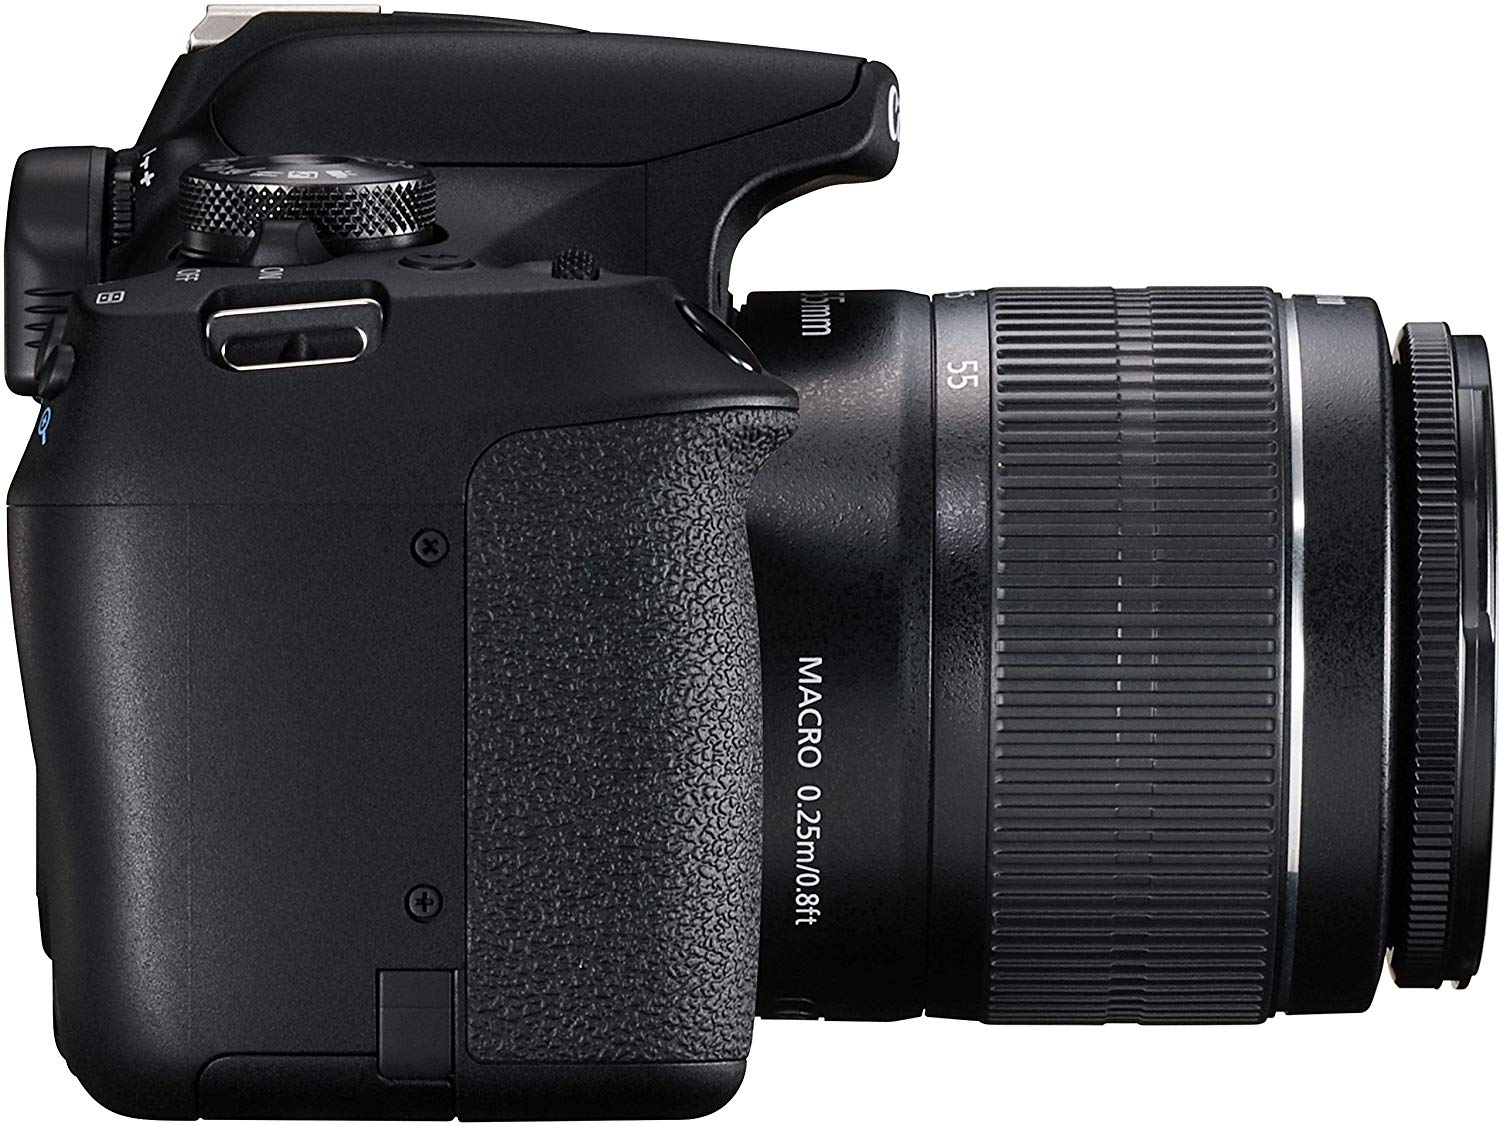 Canon EOS 15